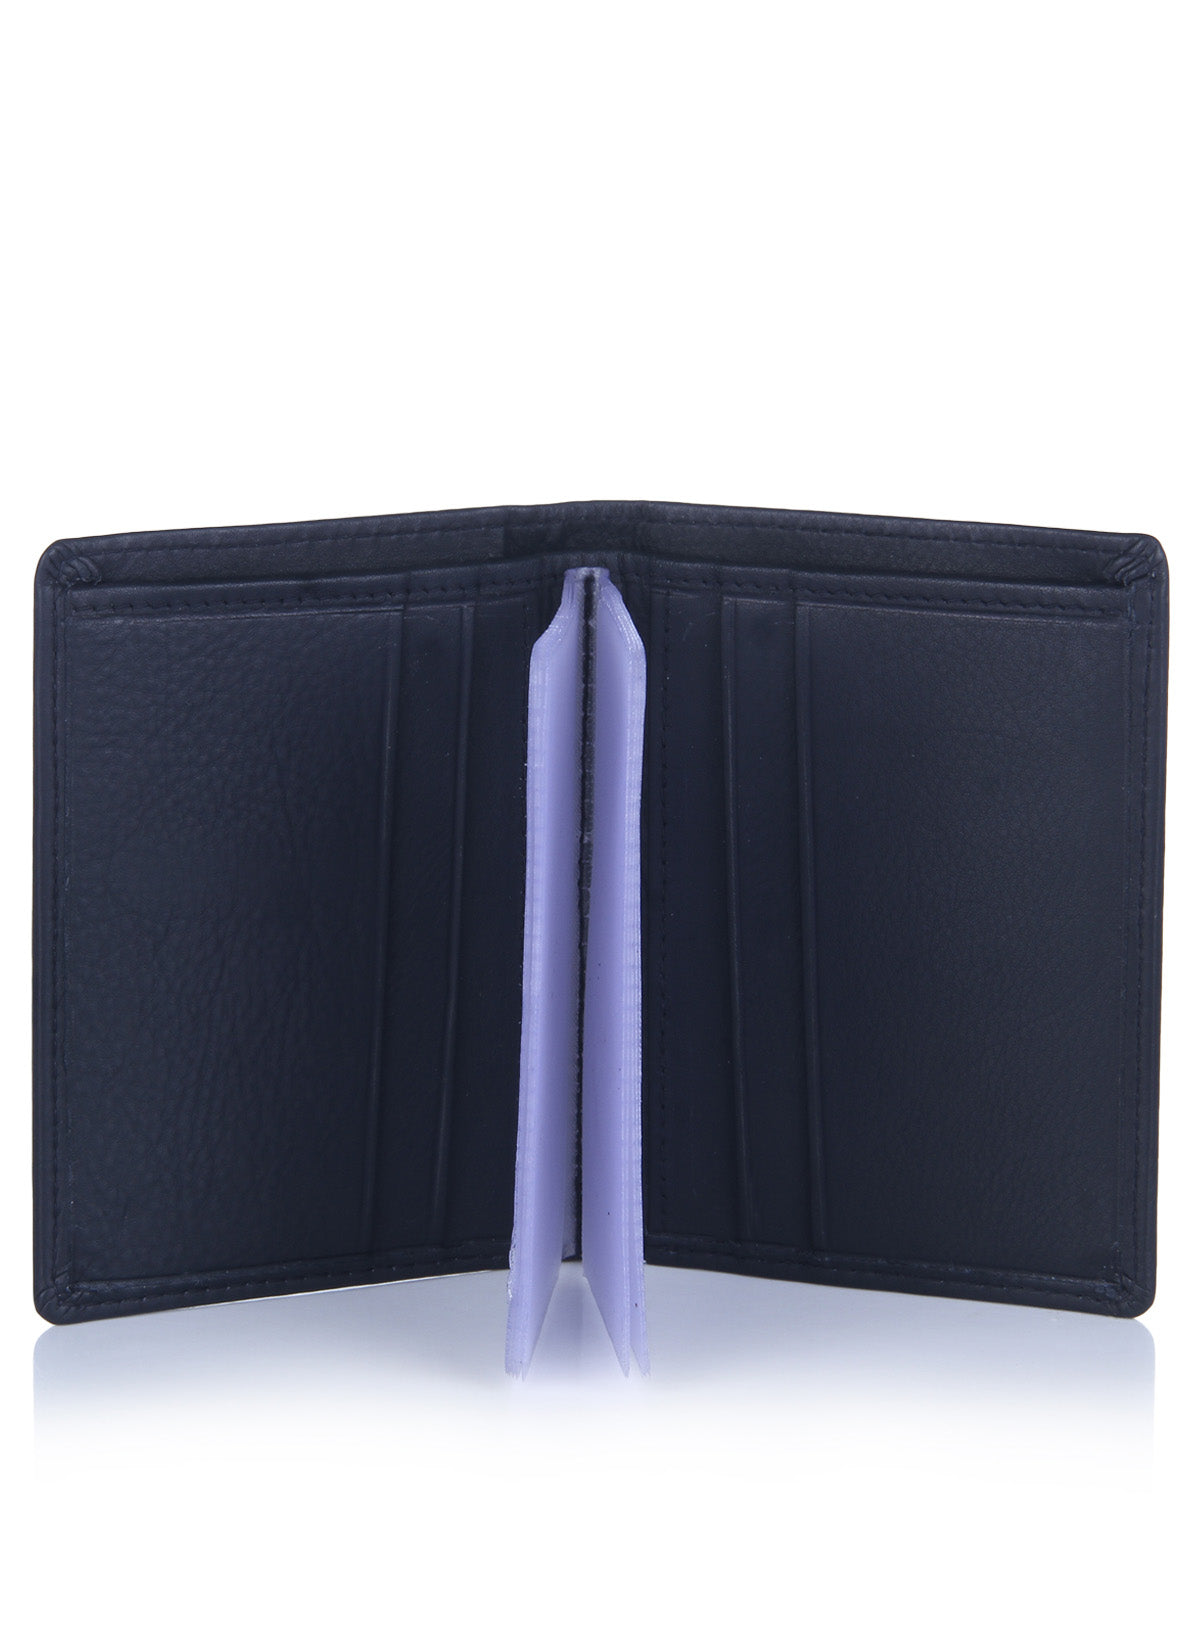 Genuine Leather Dark Blue Card Wallet